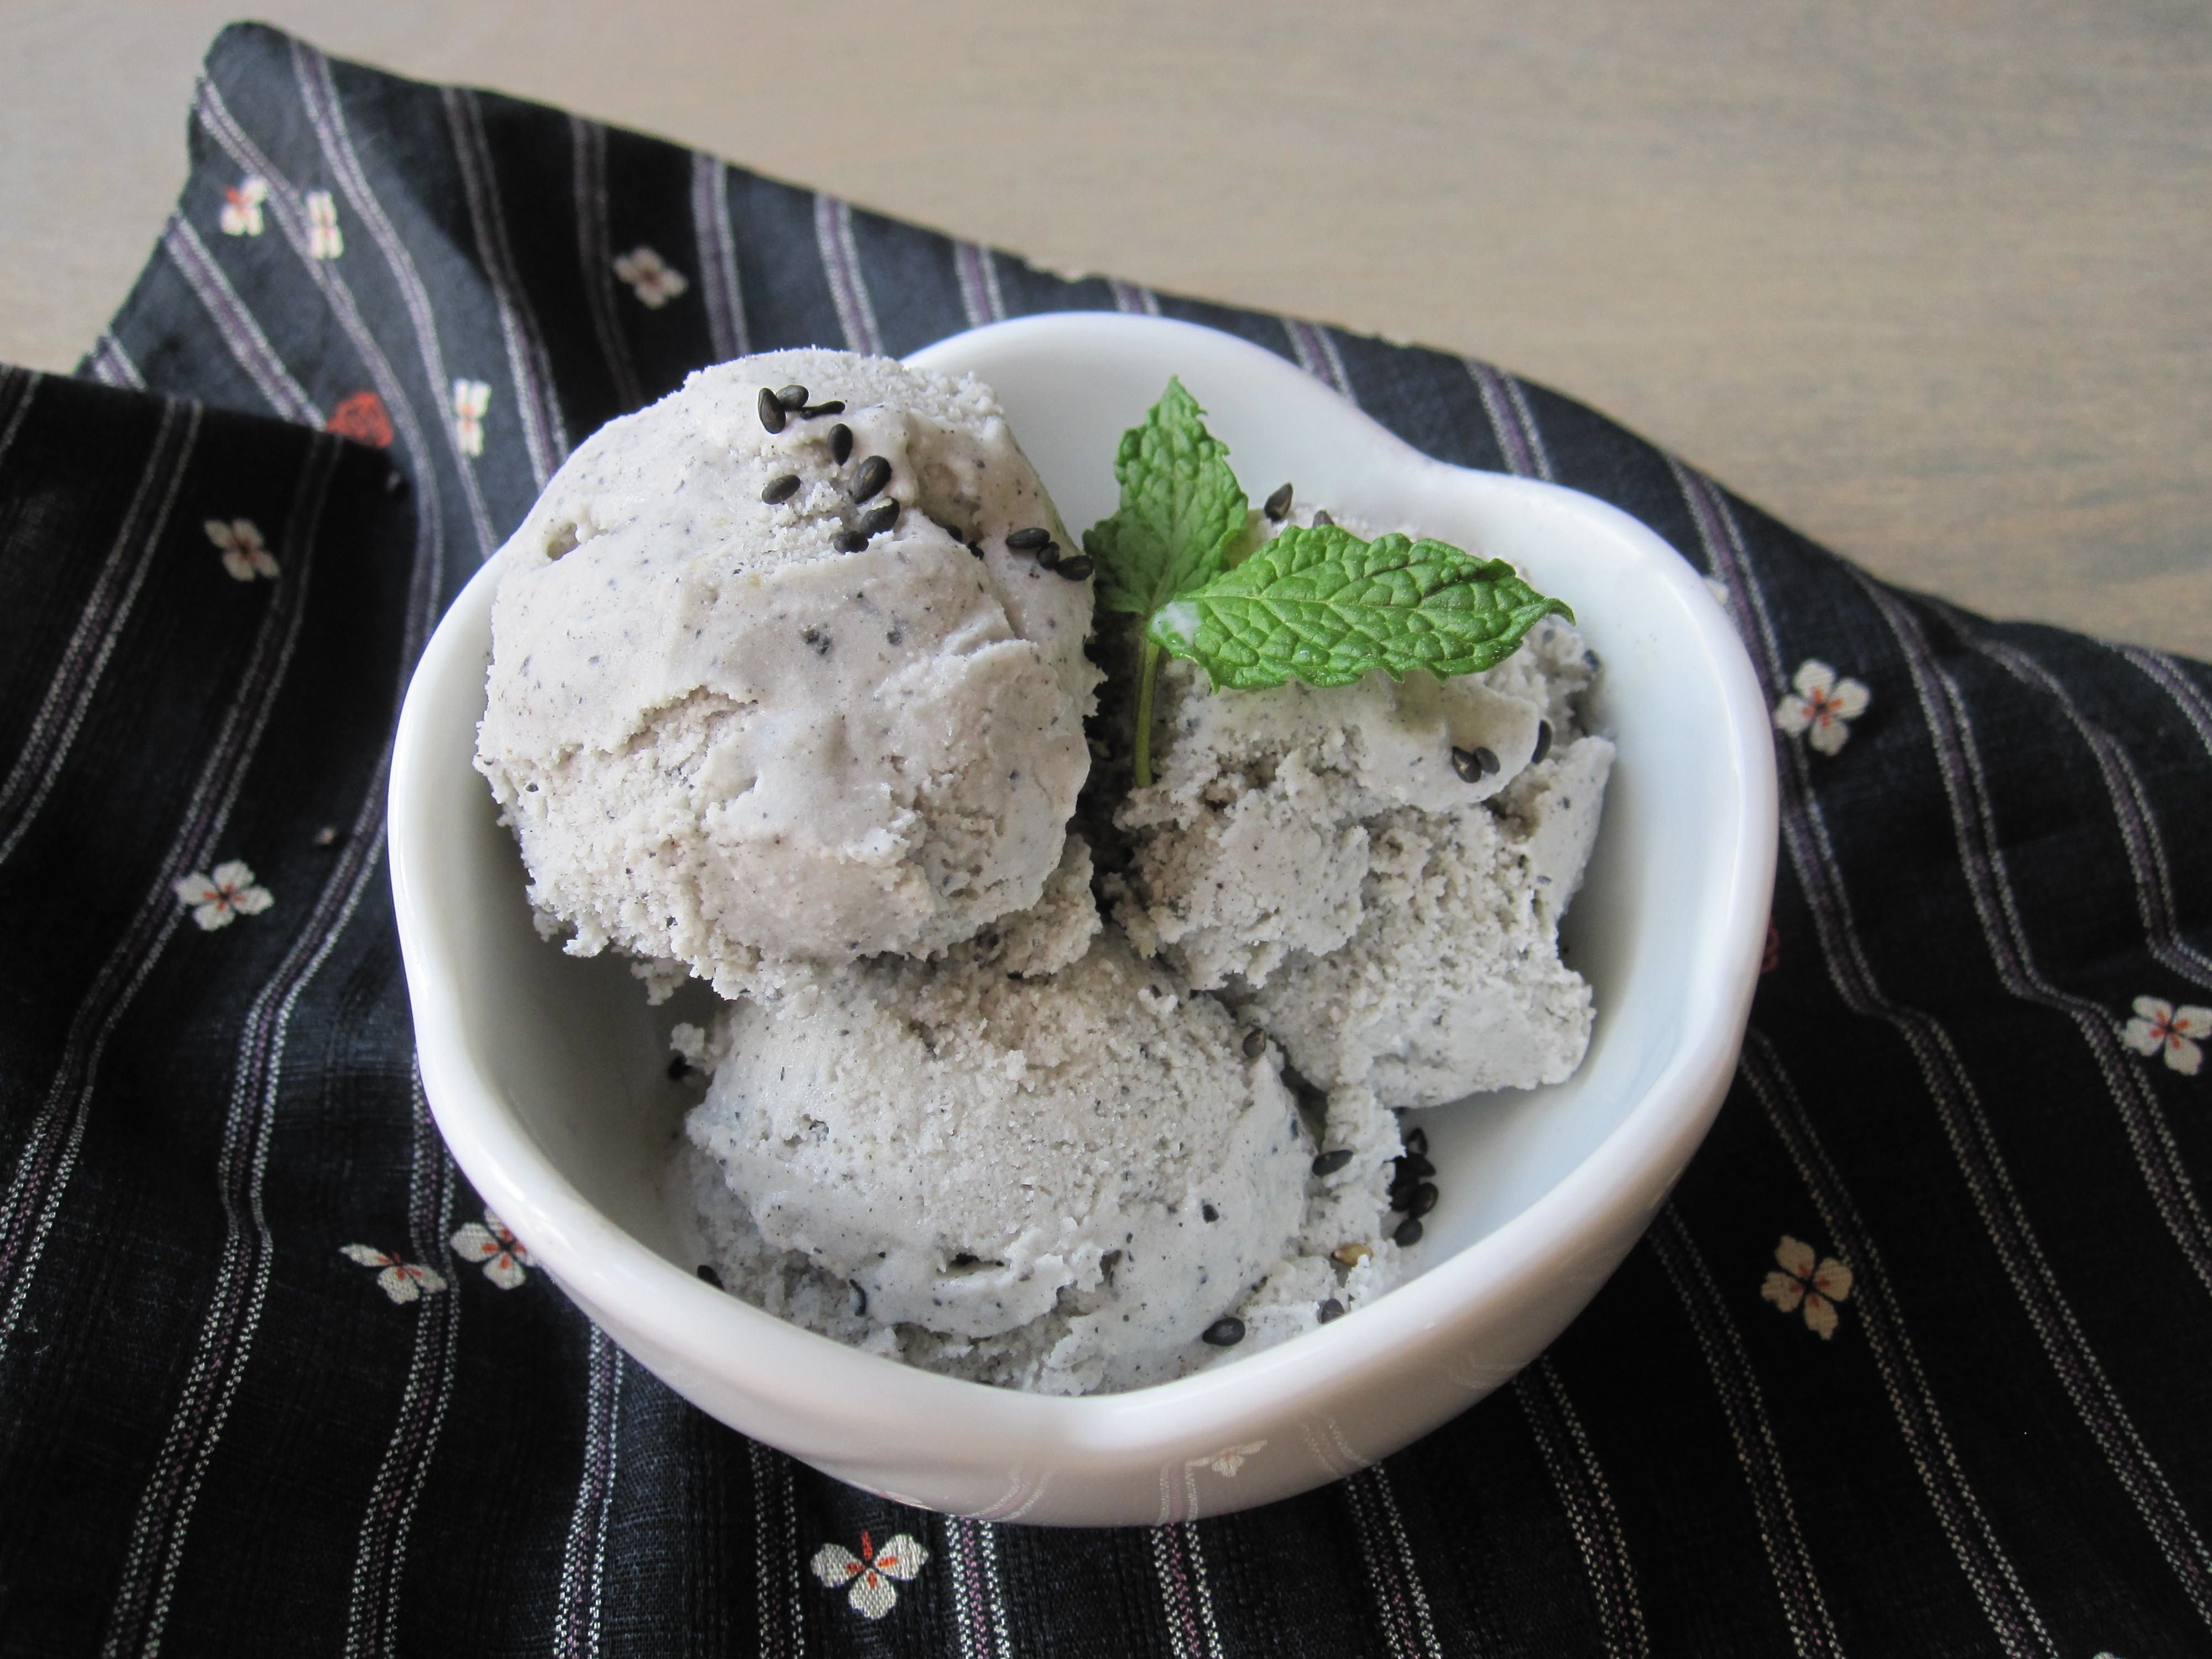 Kurogoma Ice Cream (Roasted Black Sesame Dessert)4000 x 3000